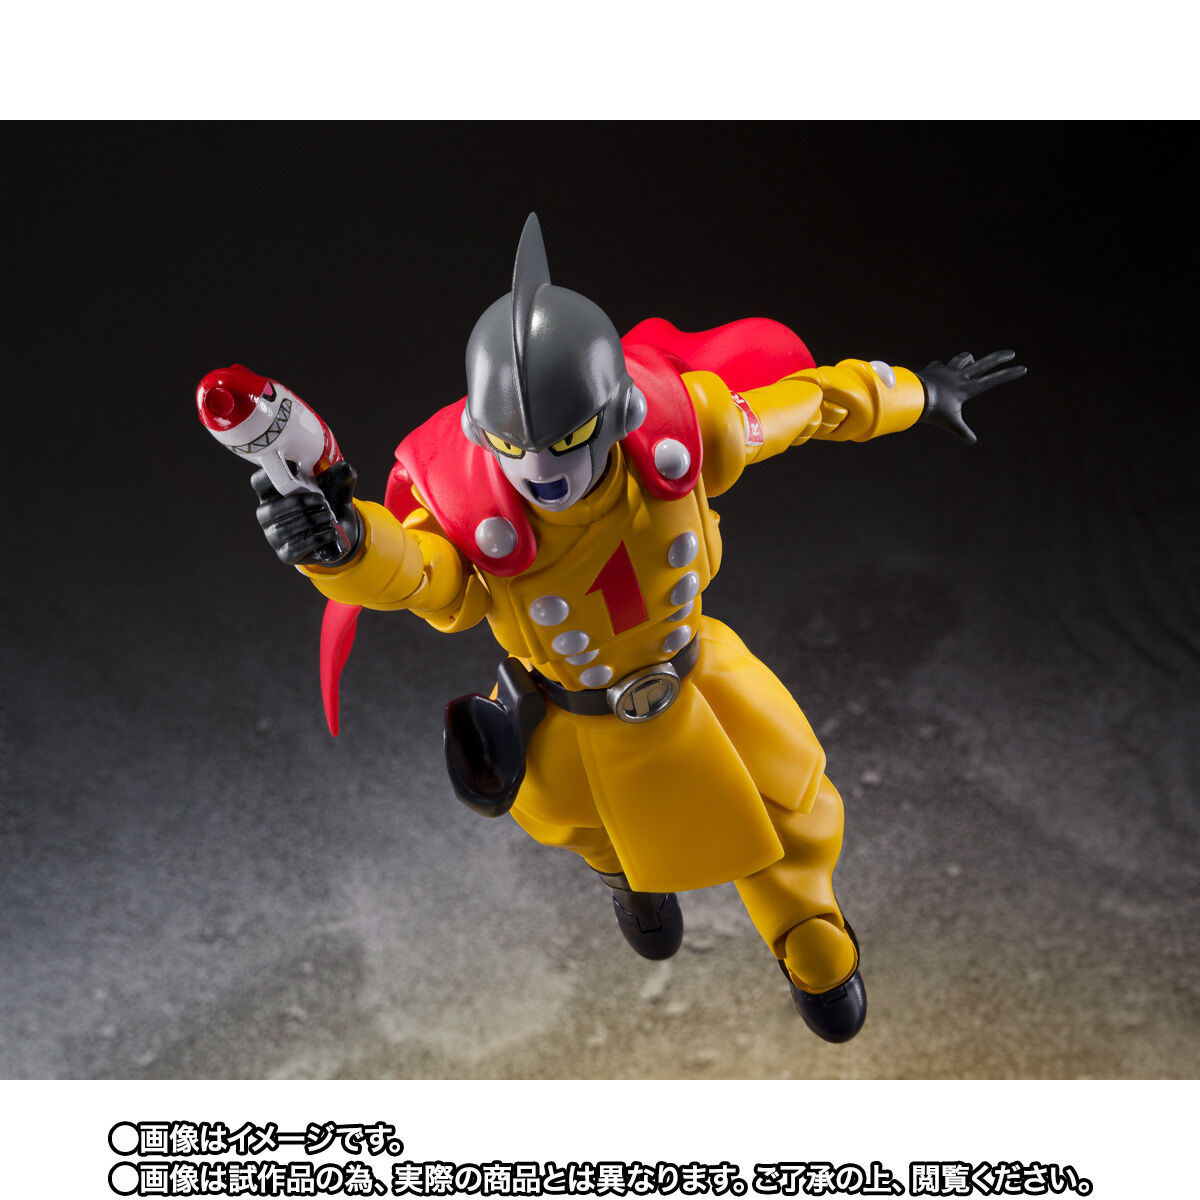 【限定販売】S.H.Figuarts『ガンマ1号』ドラゴンボール超 スーパーヒーロー 可動フィギュア-006